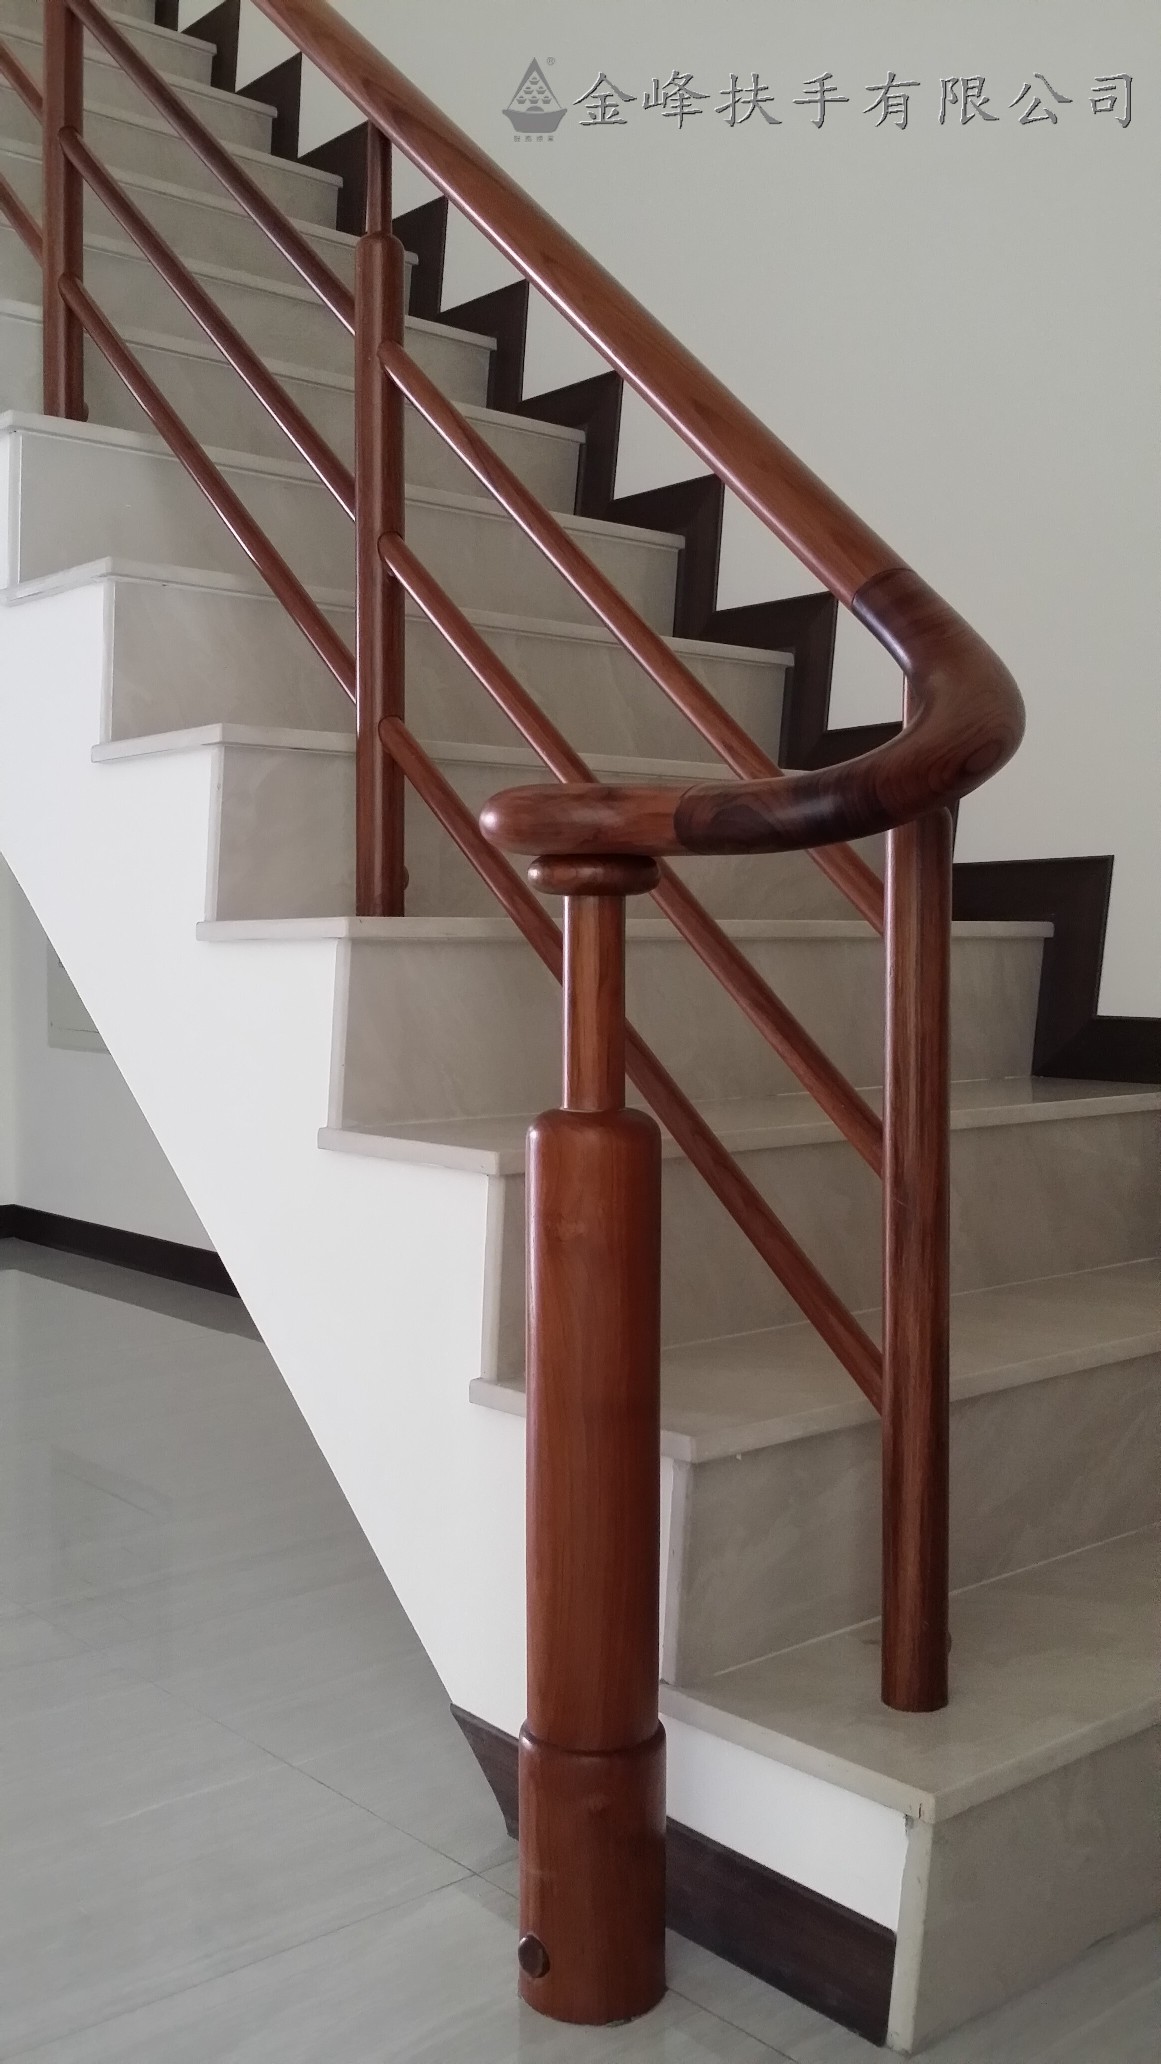 楼梯玻璃扶手栏杆效果图（岩板楼梯玻璃扶手工艺安装教程） - 家酷网